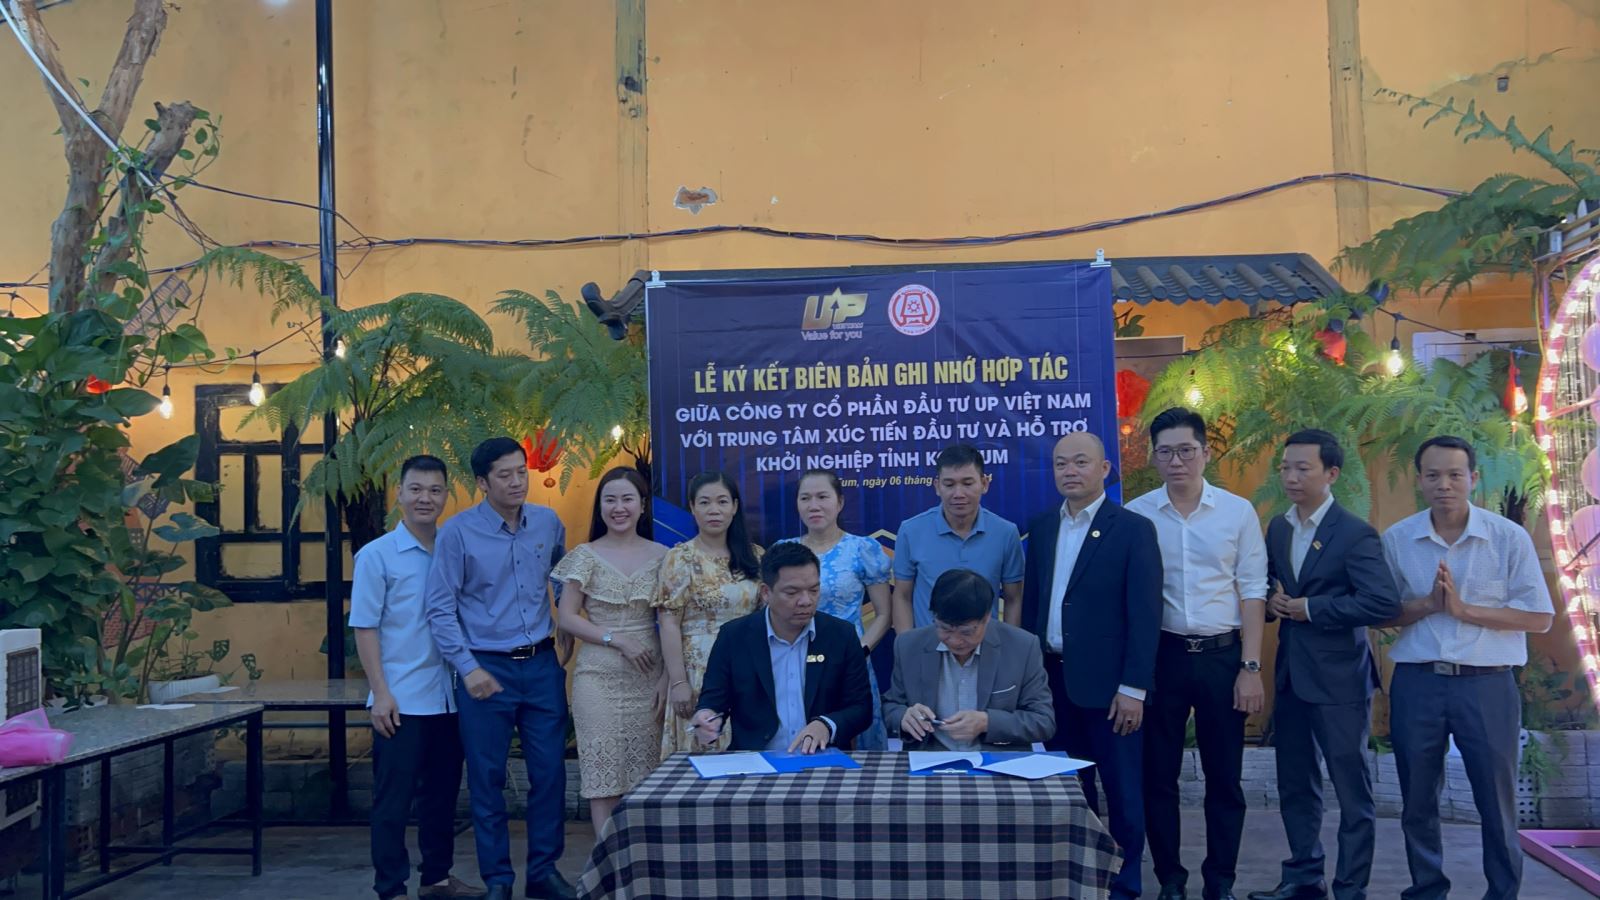 Lễ ký kết biên bản ghi nhớ hợp tác giữa Trung tâm Xúc tiến Đầu tư và Hỗ trợ khởi nghiệp tỉnh Kon Tum và Công ty Cổ phần đầu tư UP Việt Nam